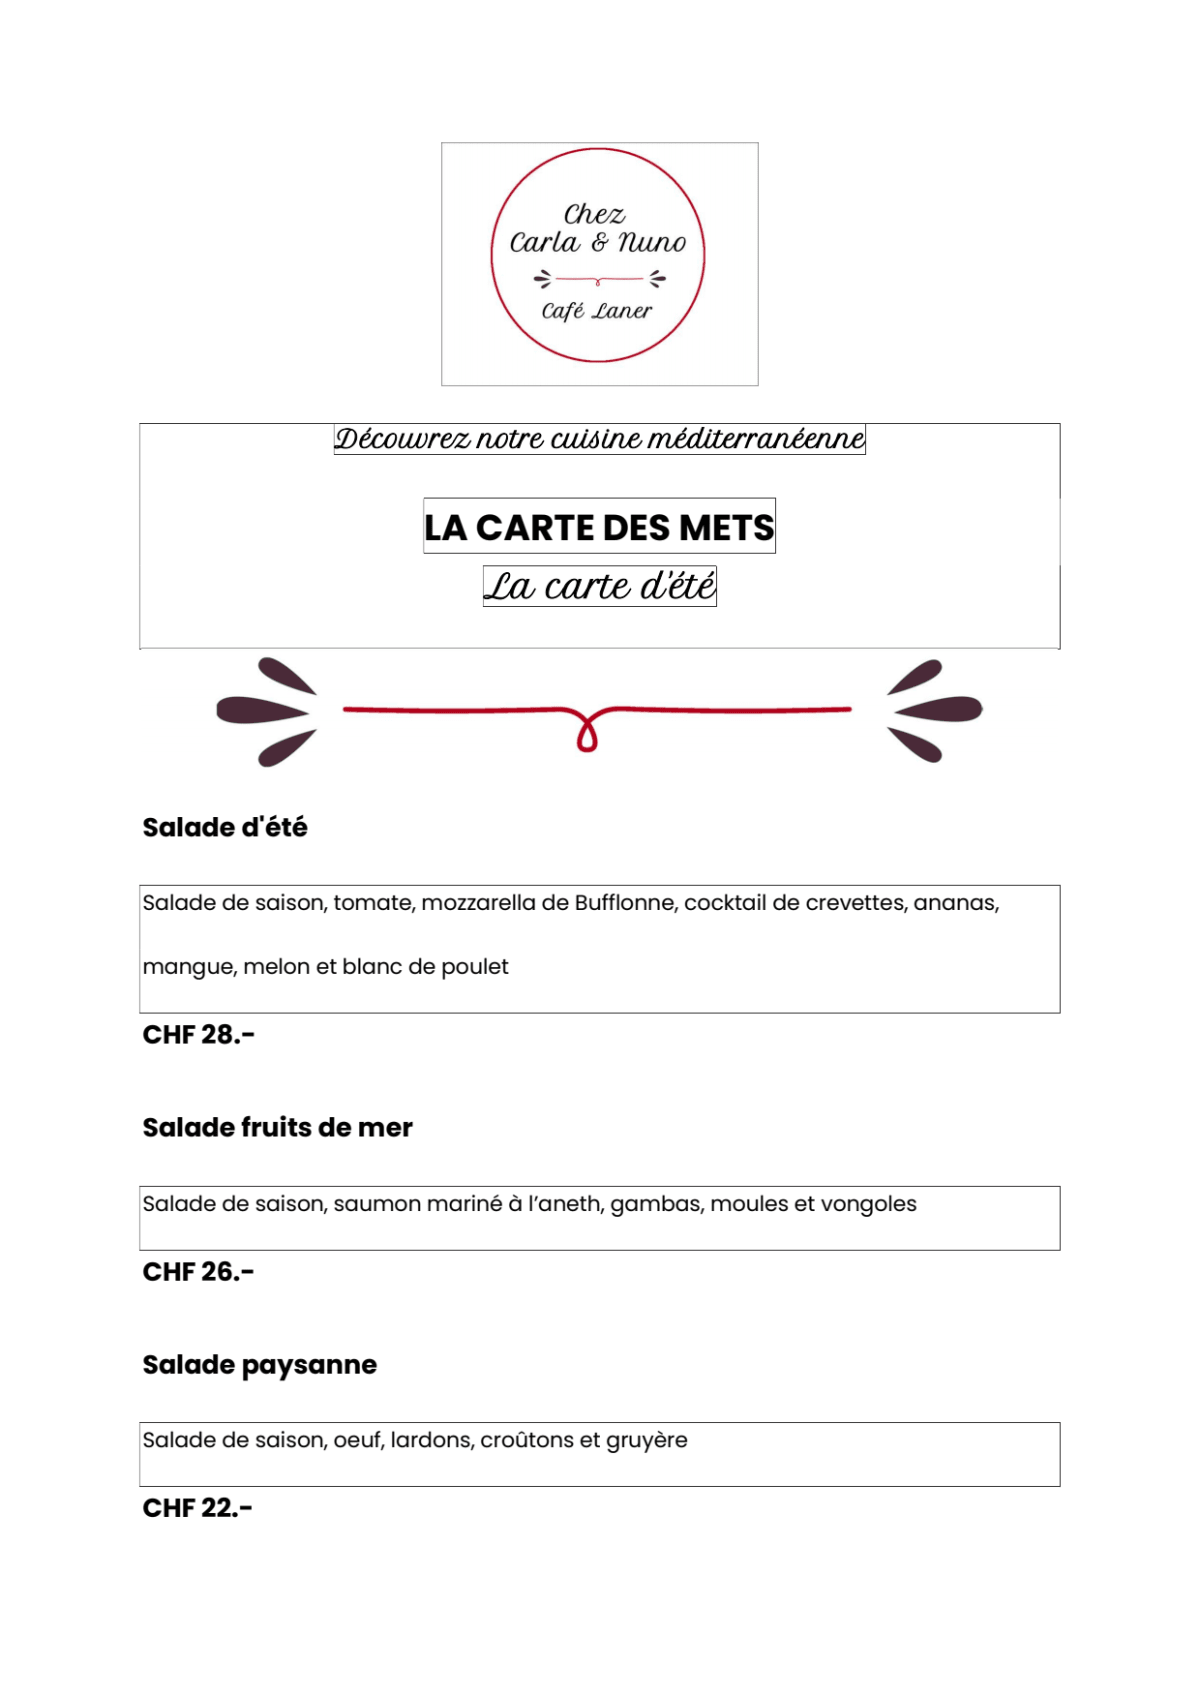 Café Laner - Chez Carla & Nuno menu